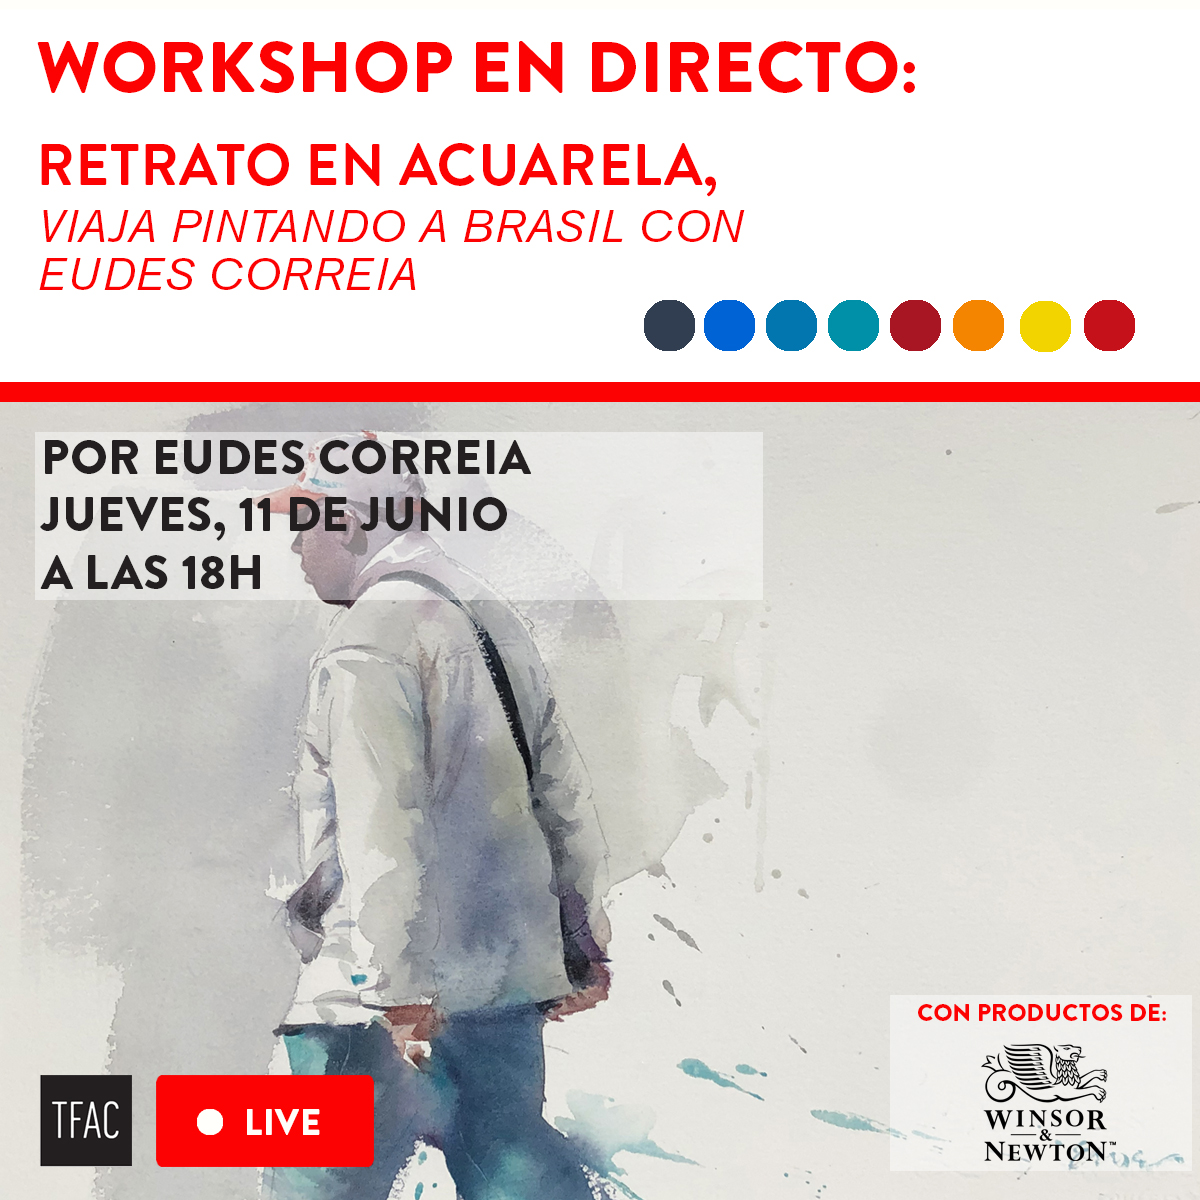 Viaja pintando con Eudes Correia a Brasil: workshop de retrato en acuarela